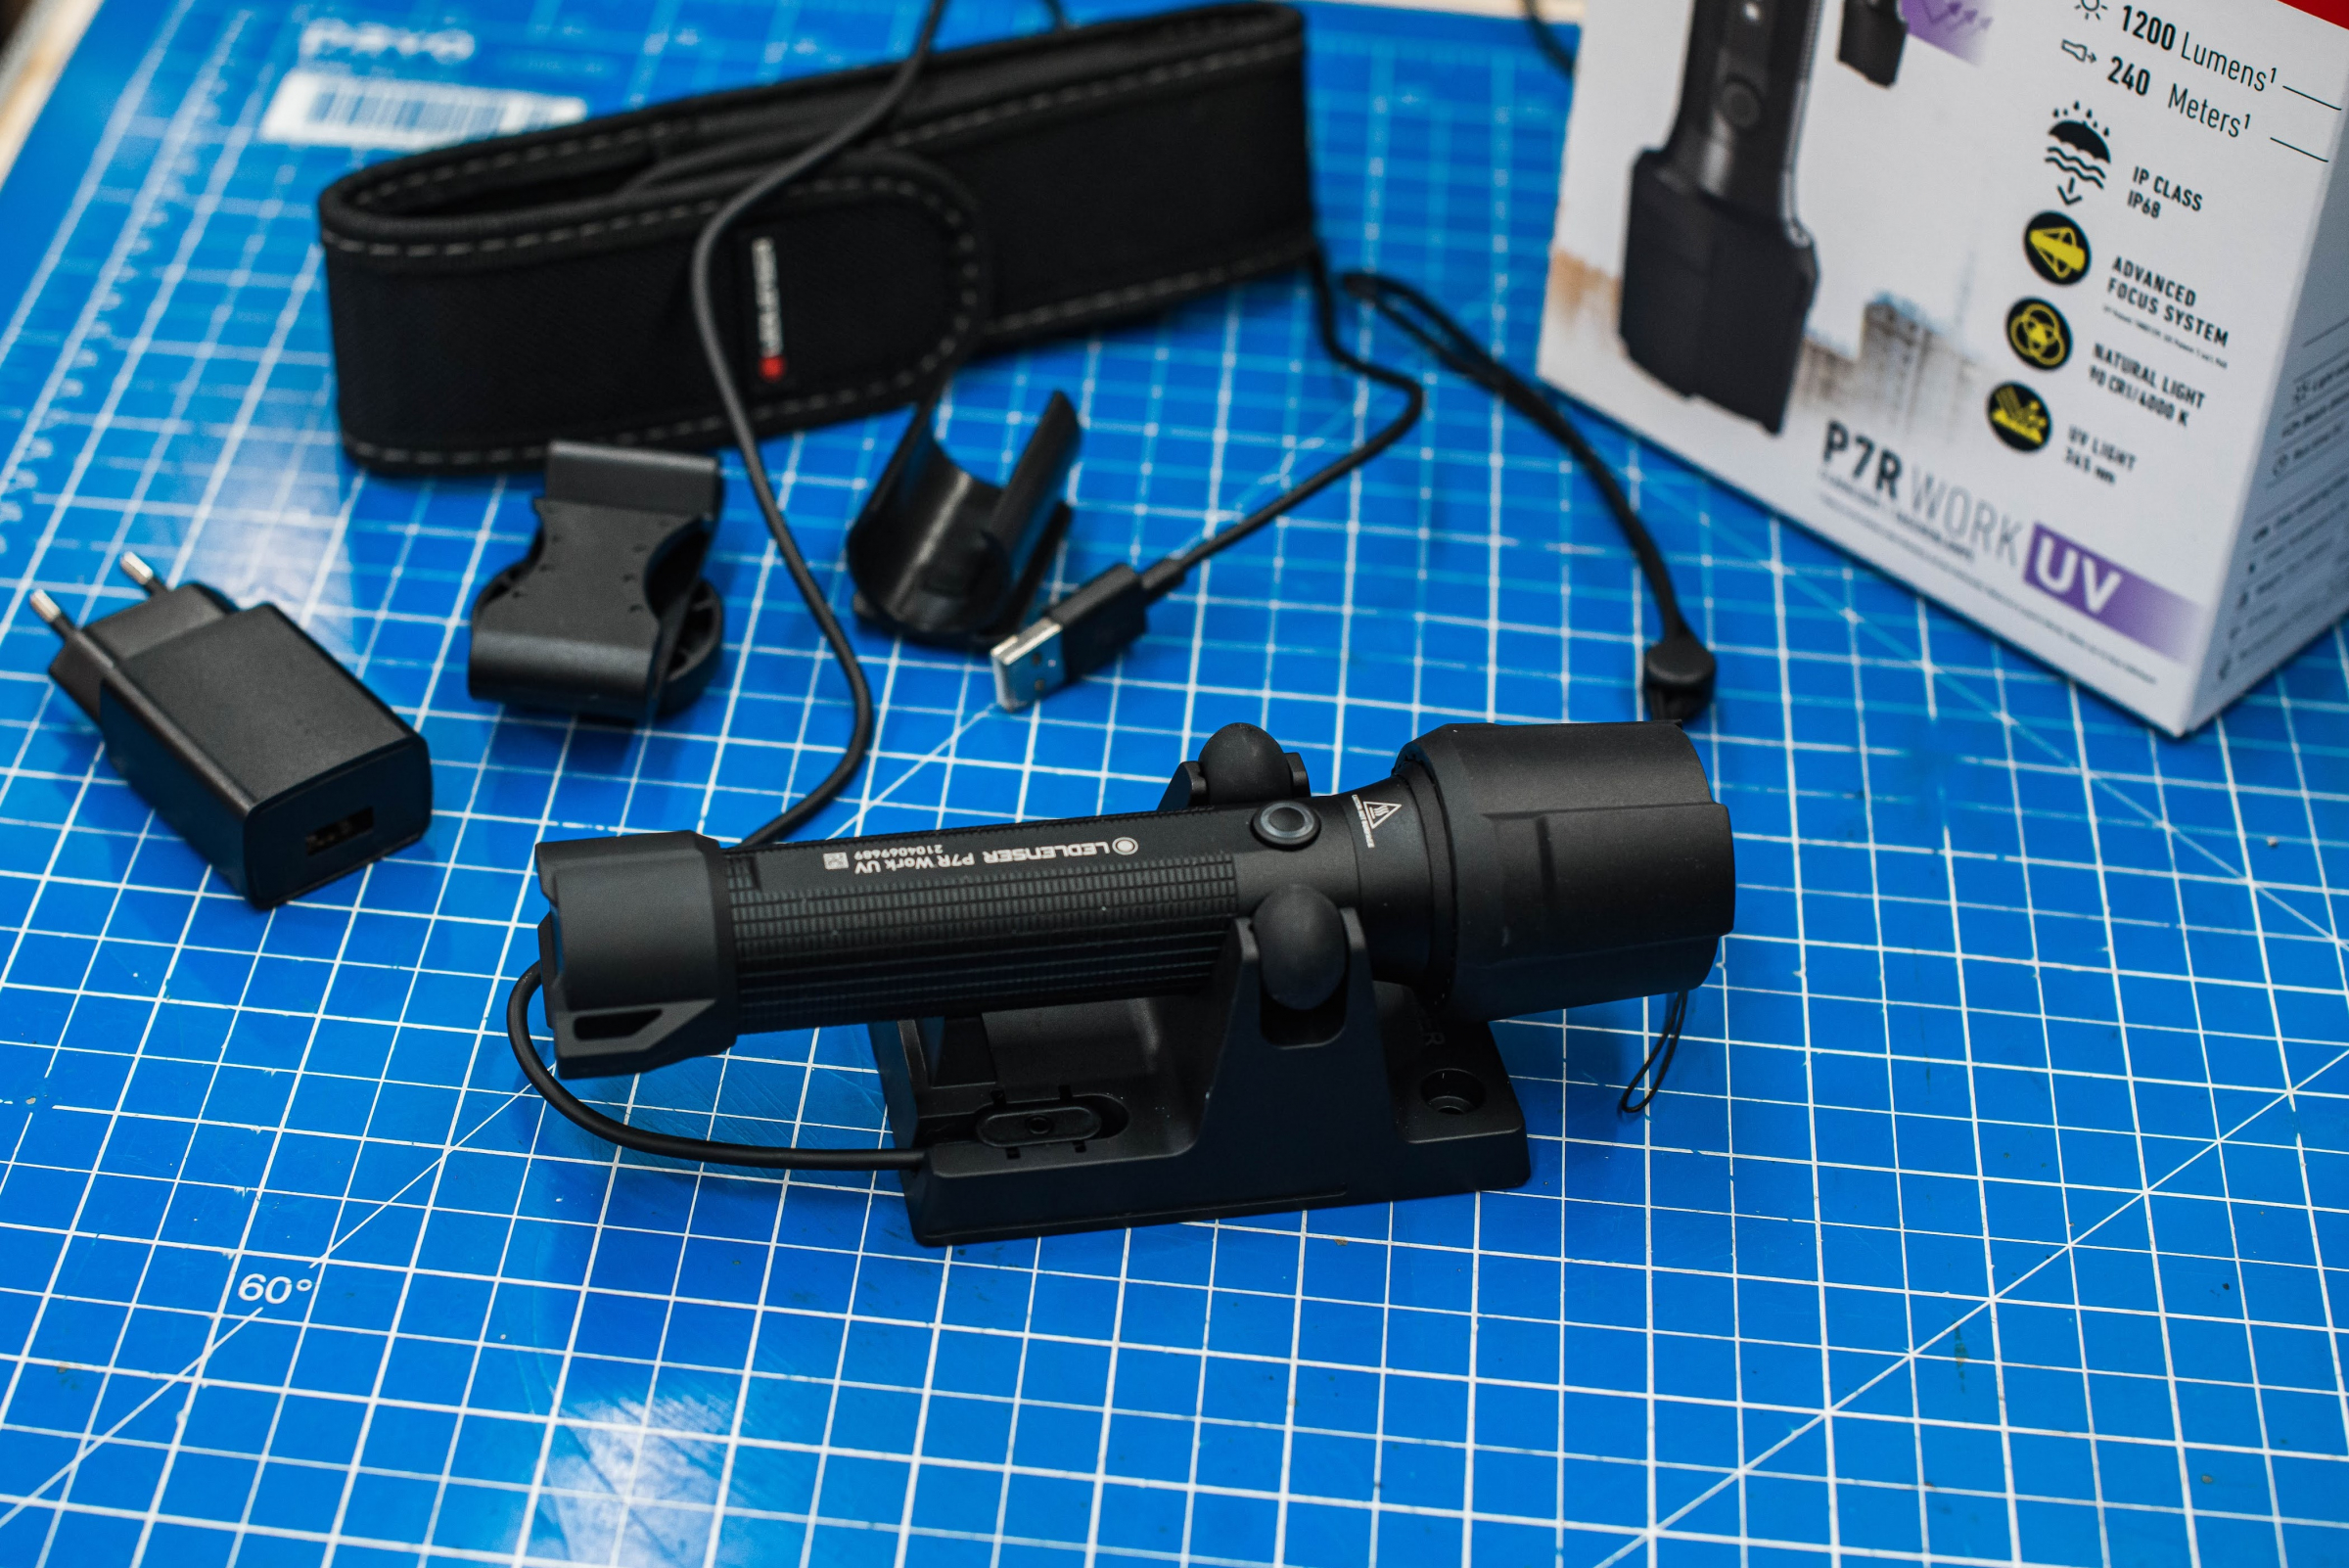 Led Lenser Taschenlampe P7R Work UV - 1200 Lumen